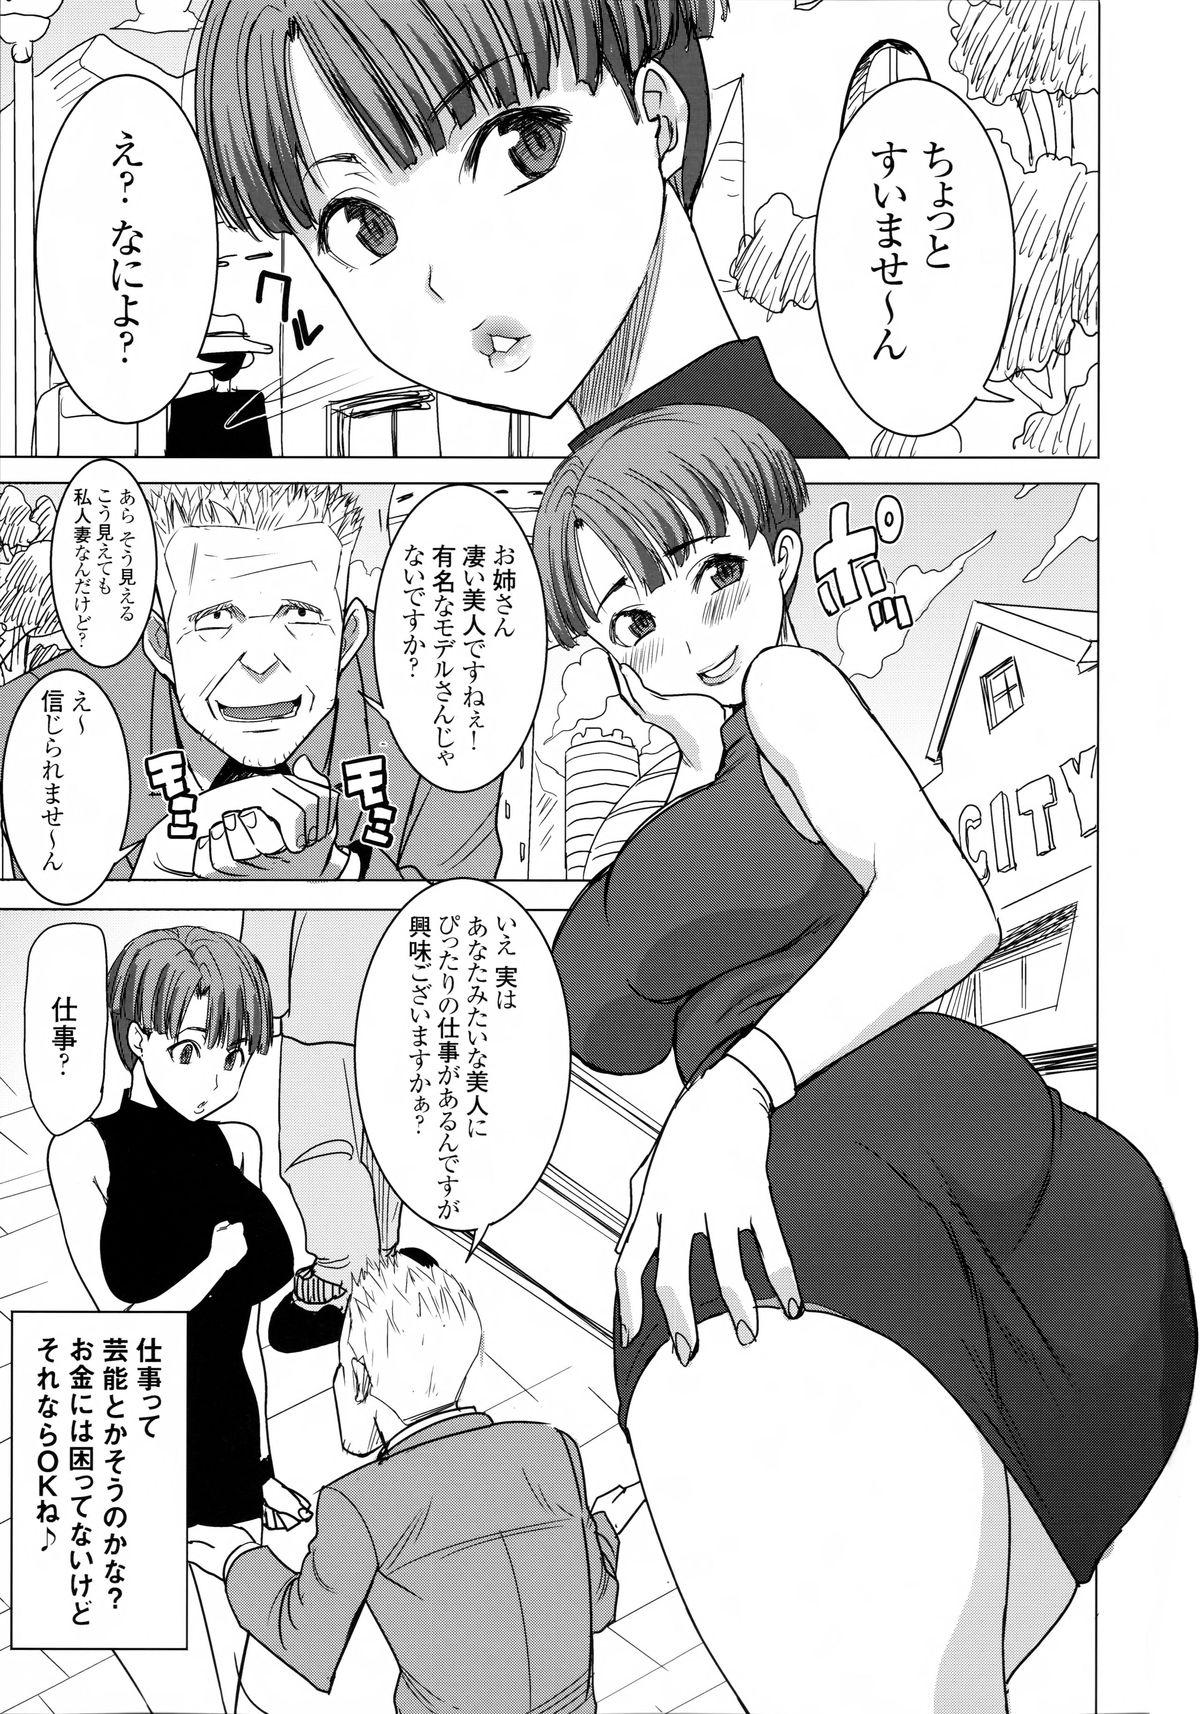 Shorts DELIVERY NIKU BENKI - Dragon ball z Enema - Page 3